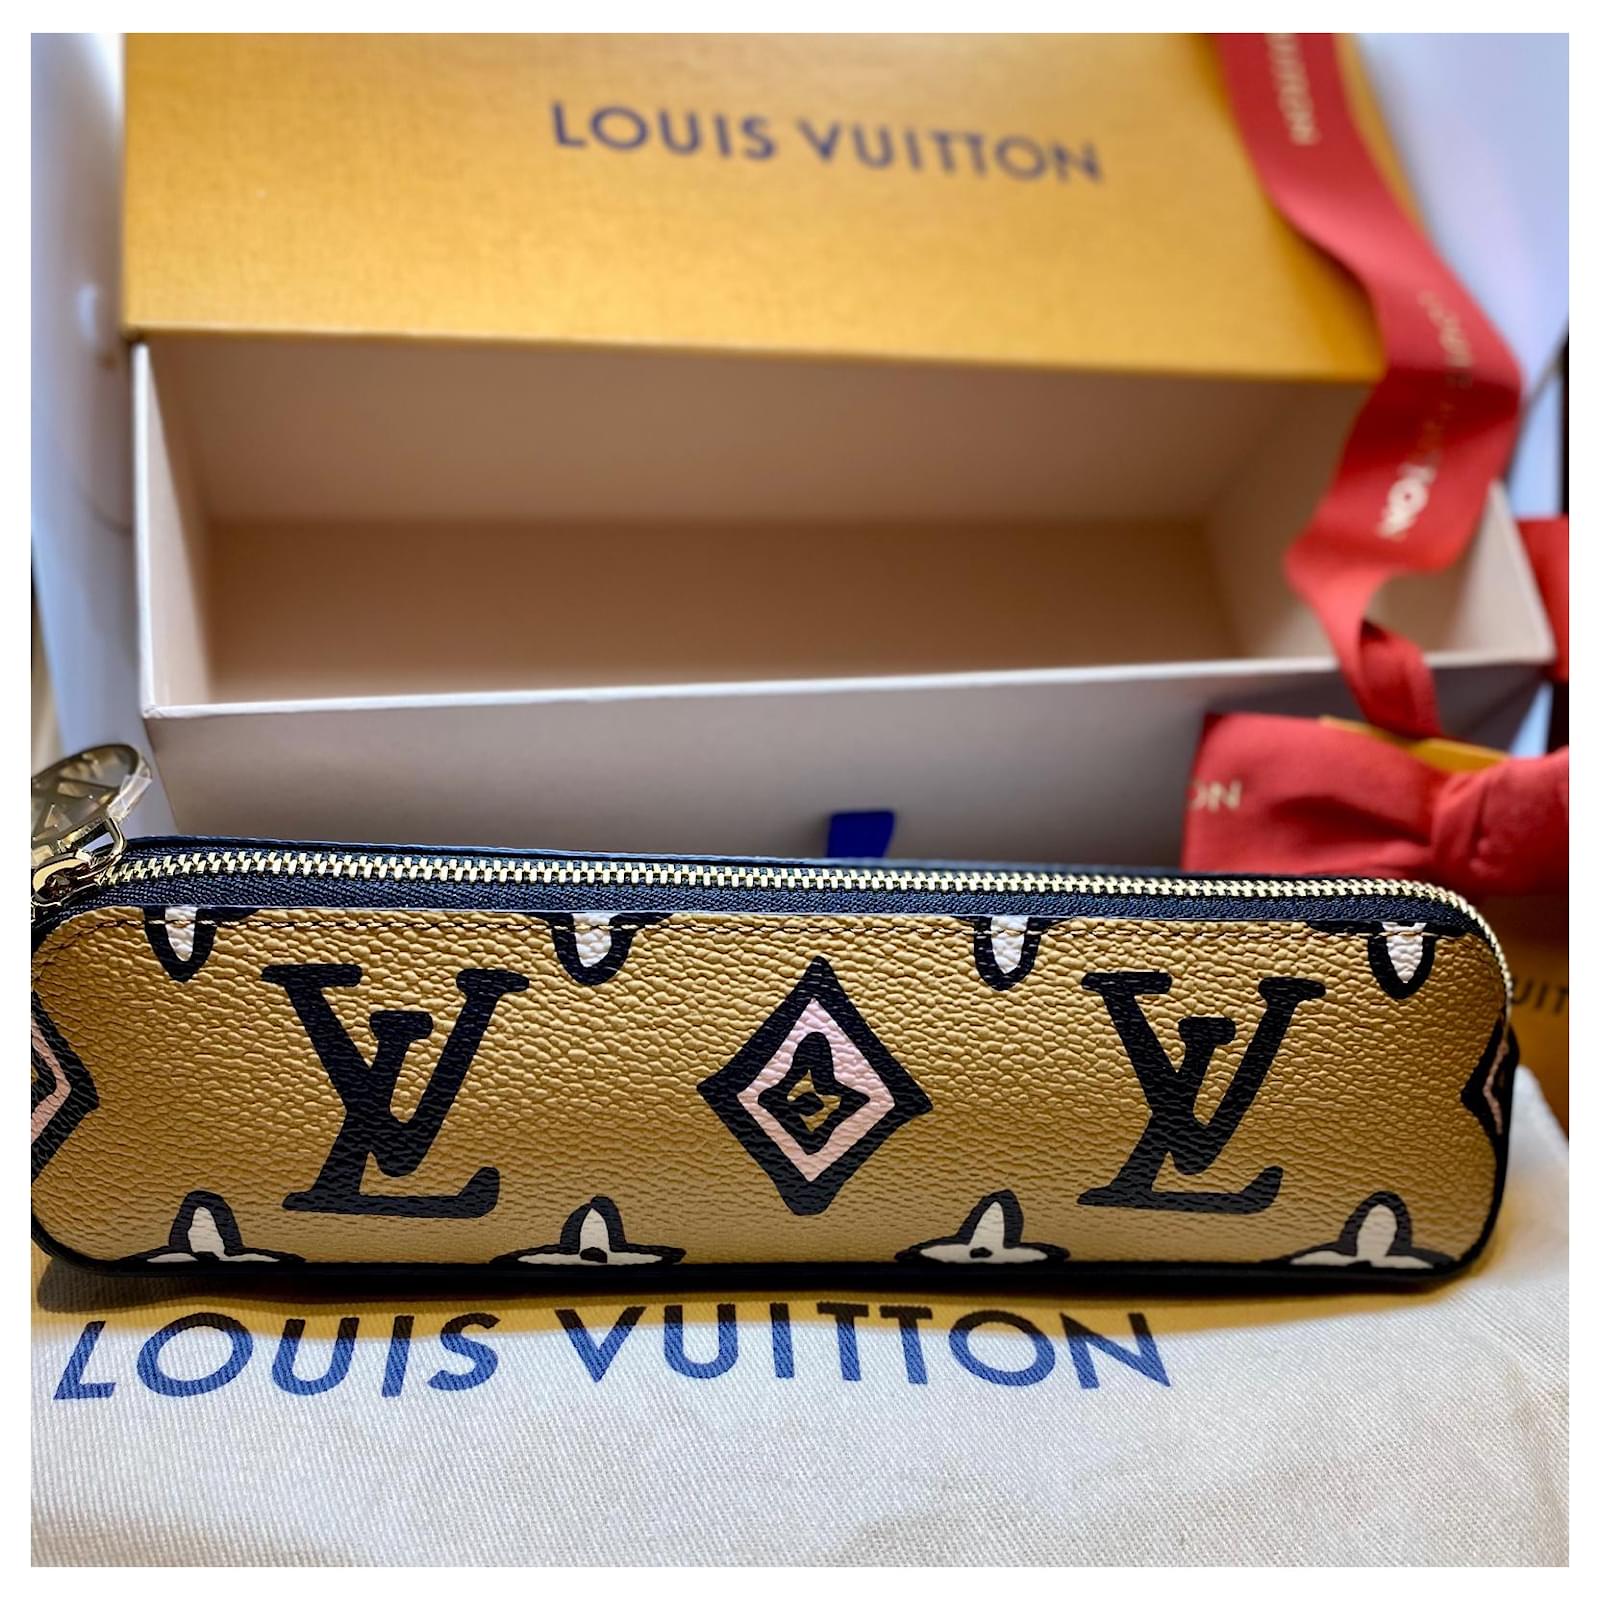 Buy Authentic Pre-owned Louis Vuitton Monogram Trousse Elizabeth